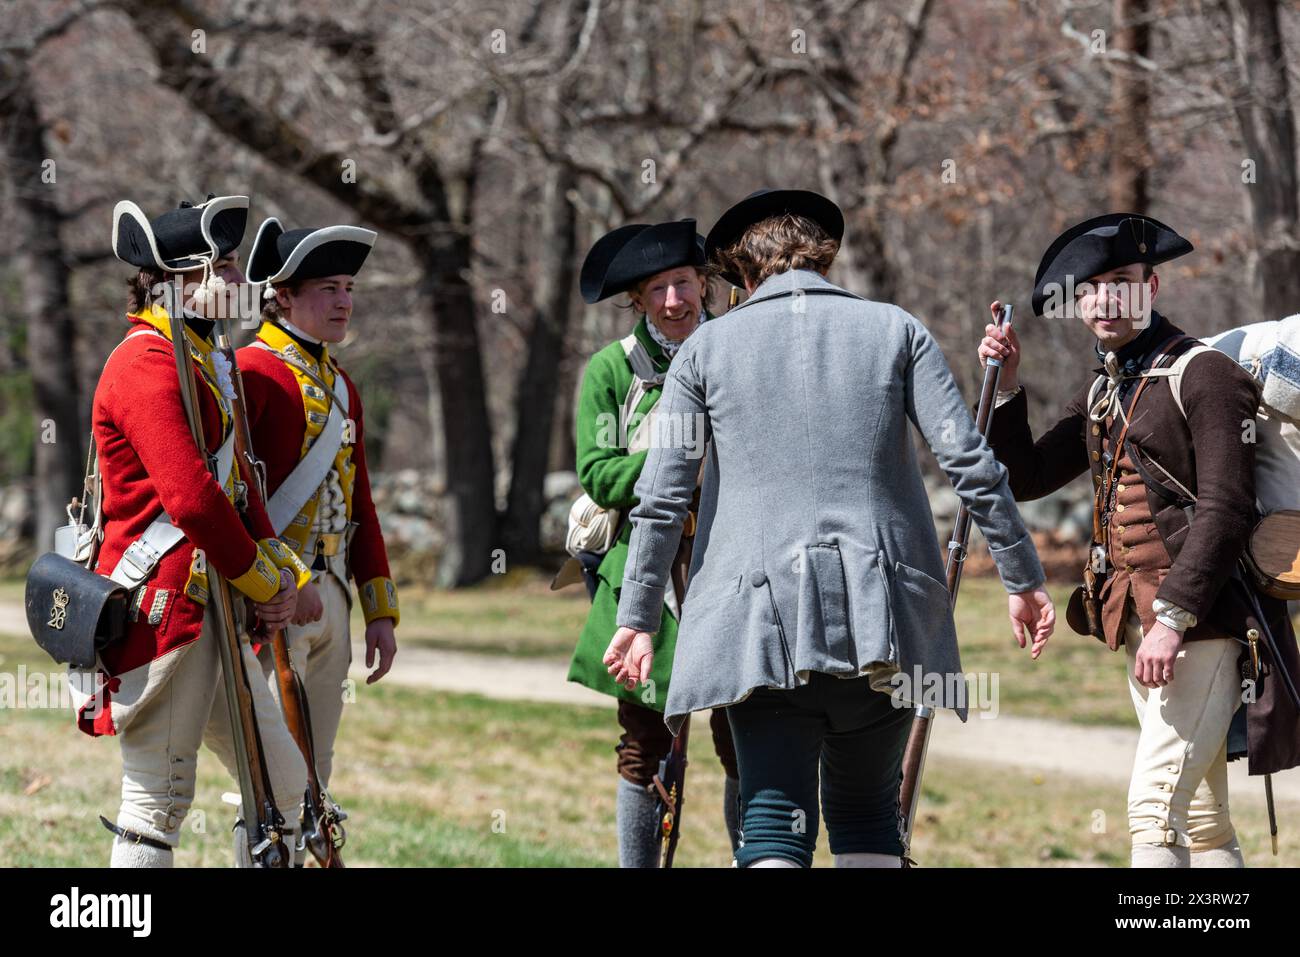 Reconstitution de la bataille du 19 avril 1775 entre les soldats britanniques et la milice de Lexington sous le commandement du capitaine John Parker. Banque D'Images